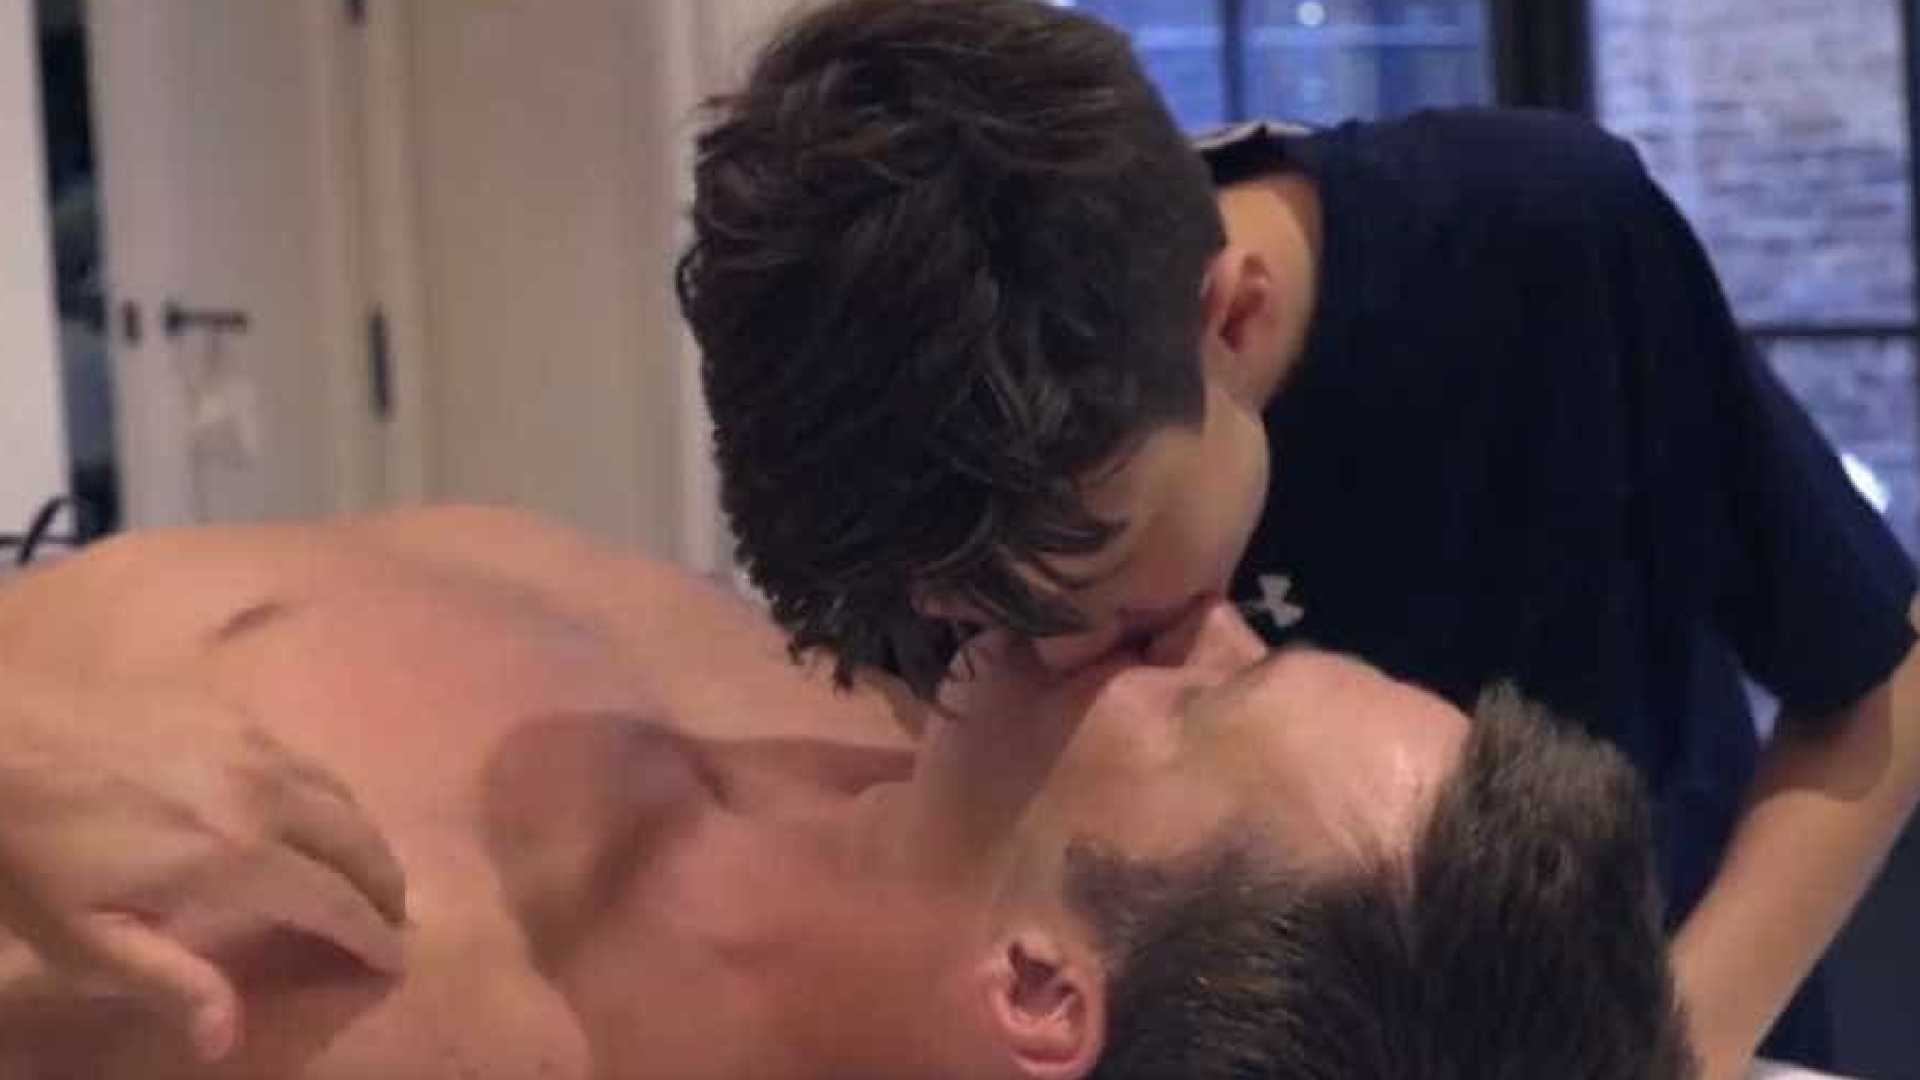 Intimidade a mais? O beijo entre pai e filho que gerou uma grande discussão | VÍDEO